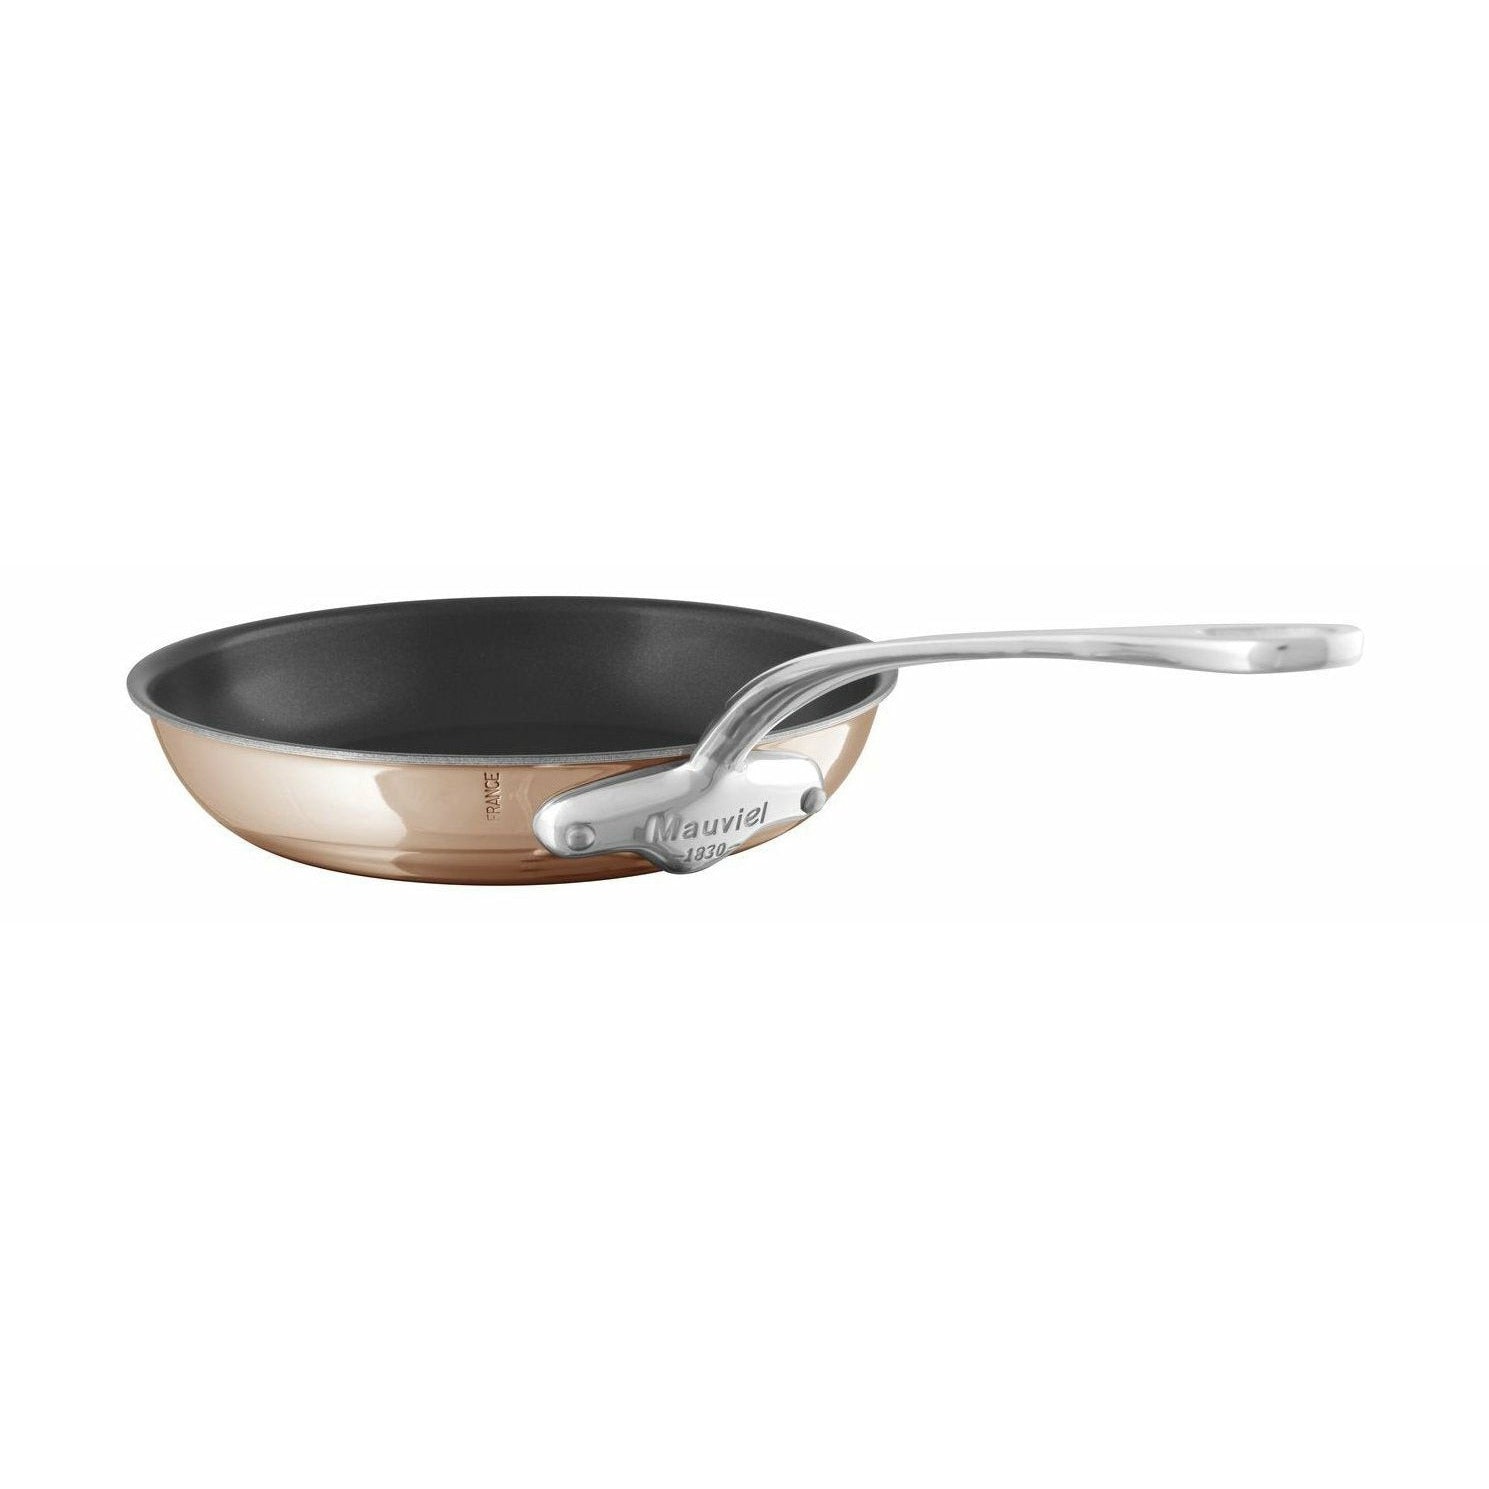 Mauviel M "6s Pan à frire non cuivre / acier inoxydable non bâton, Ø 26 cm